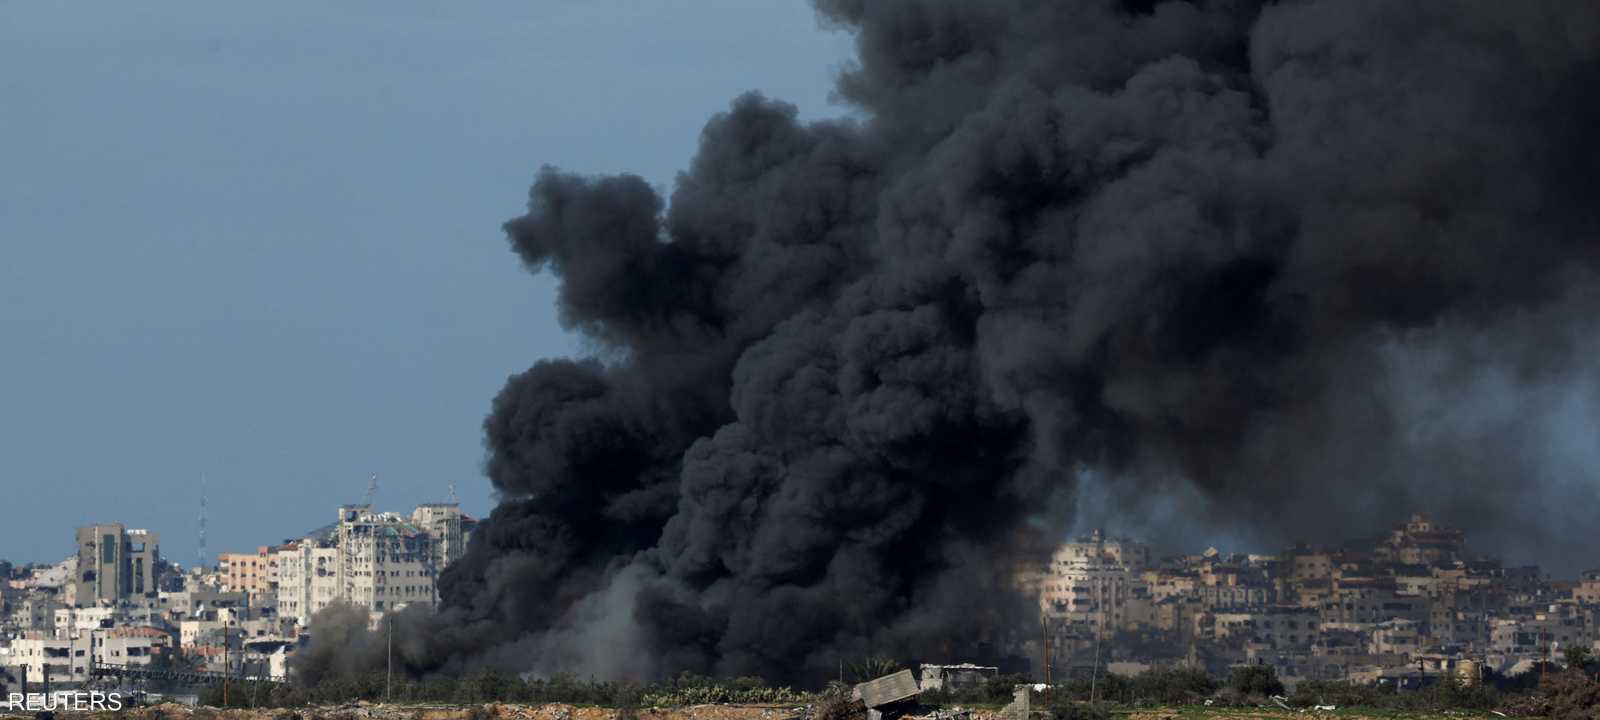 مخاوف من تداعيات الحرب على غزة إقليميا ودوليا